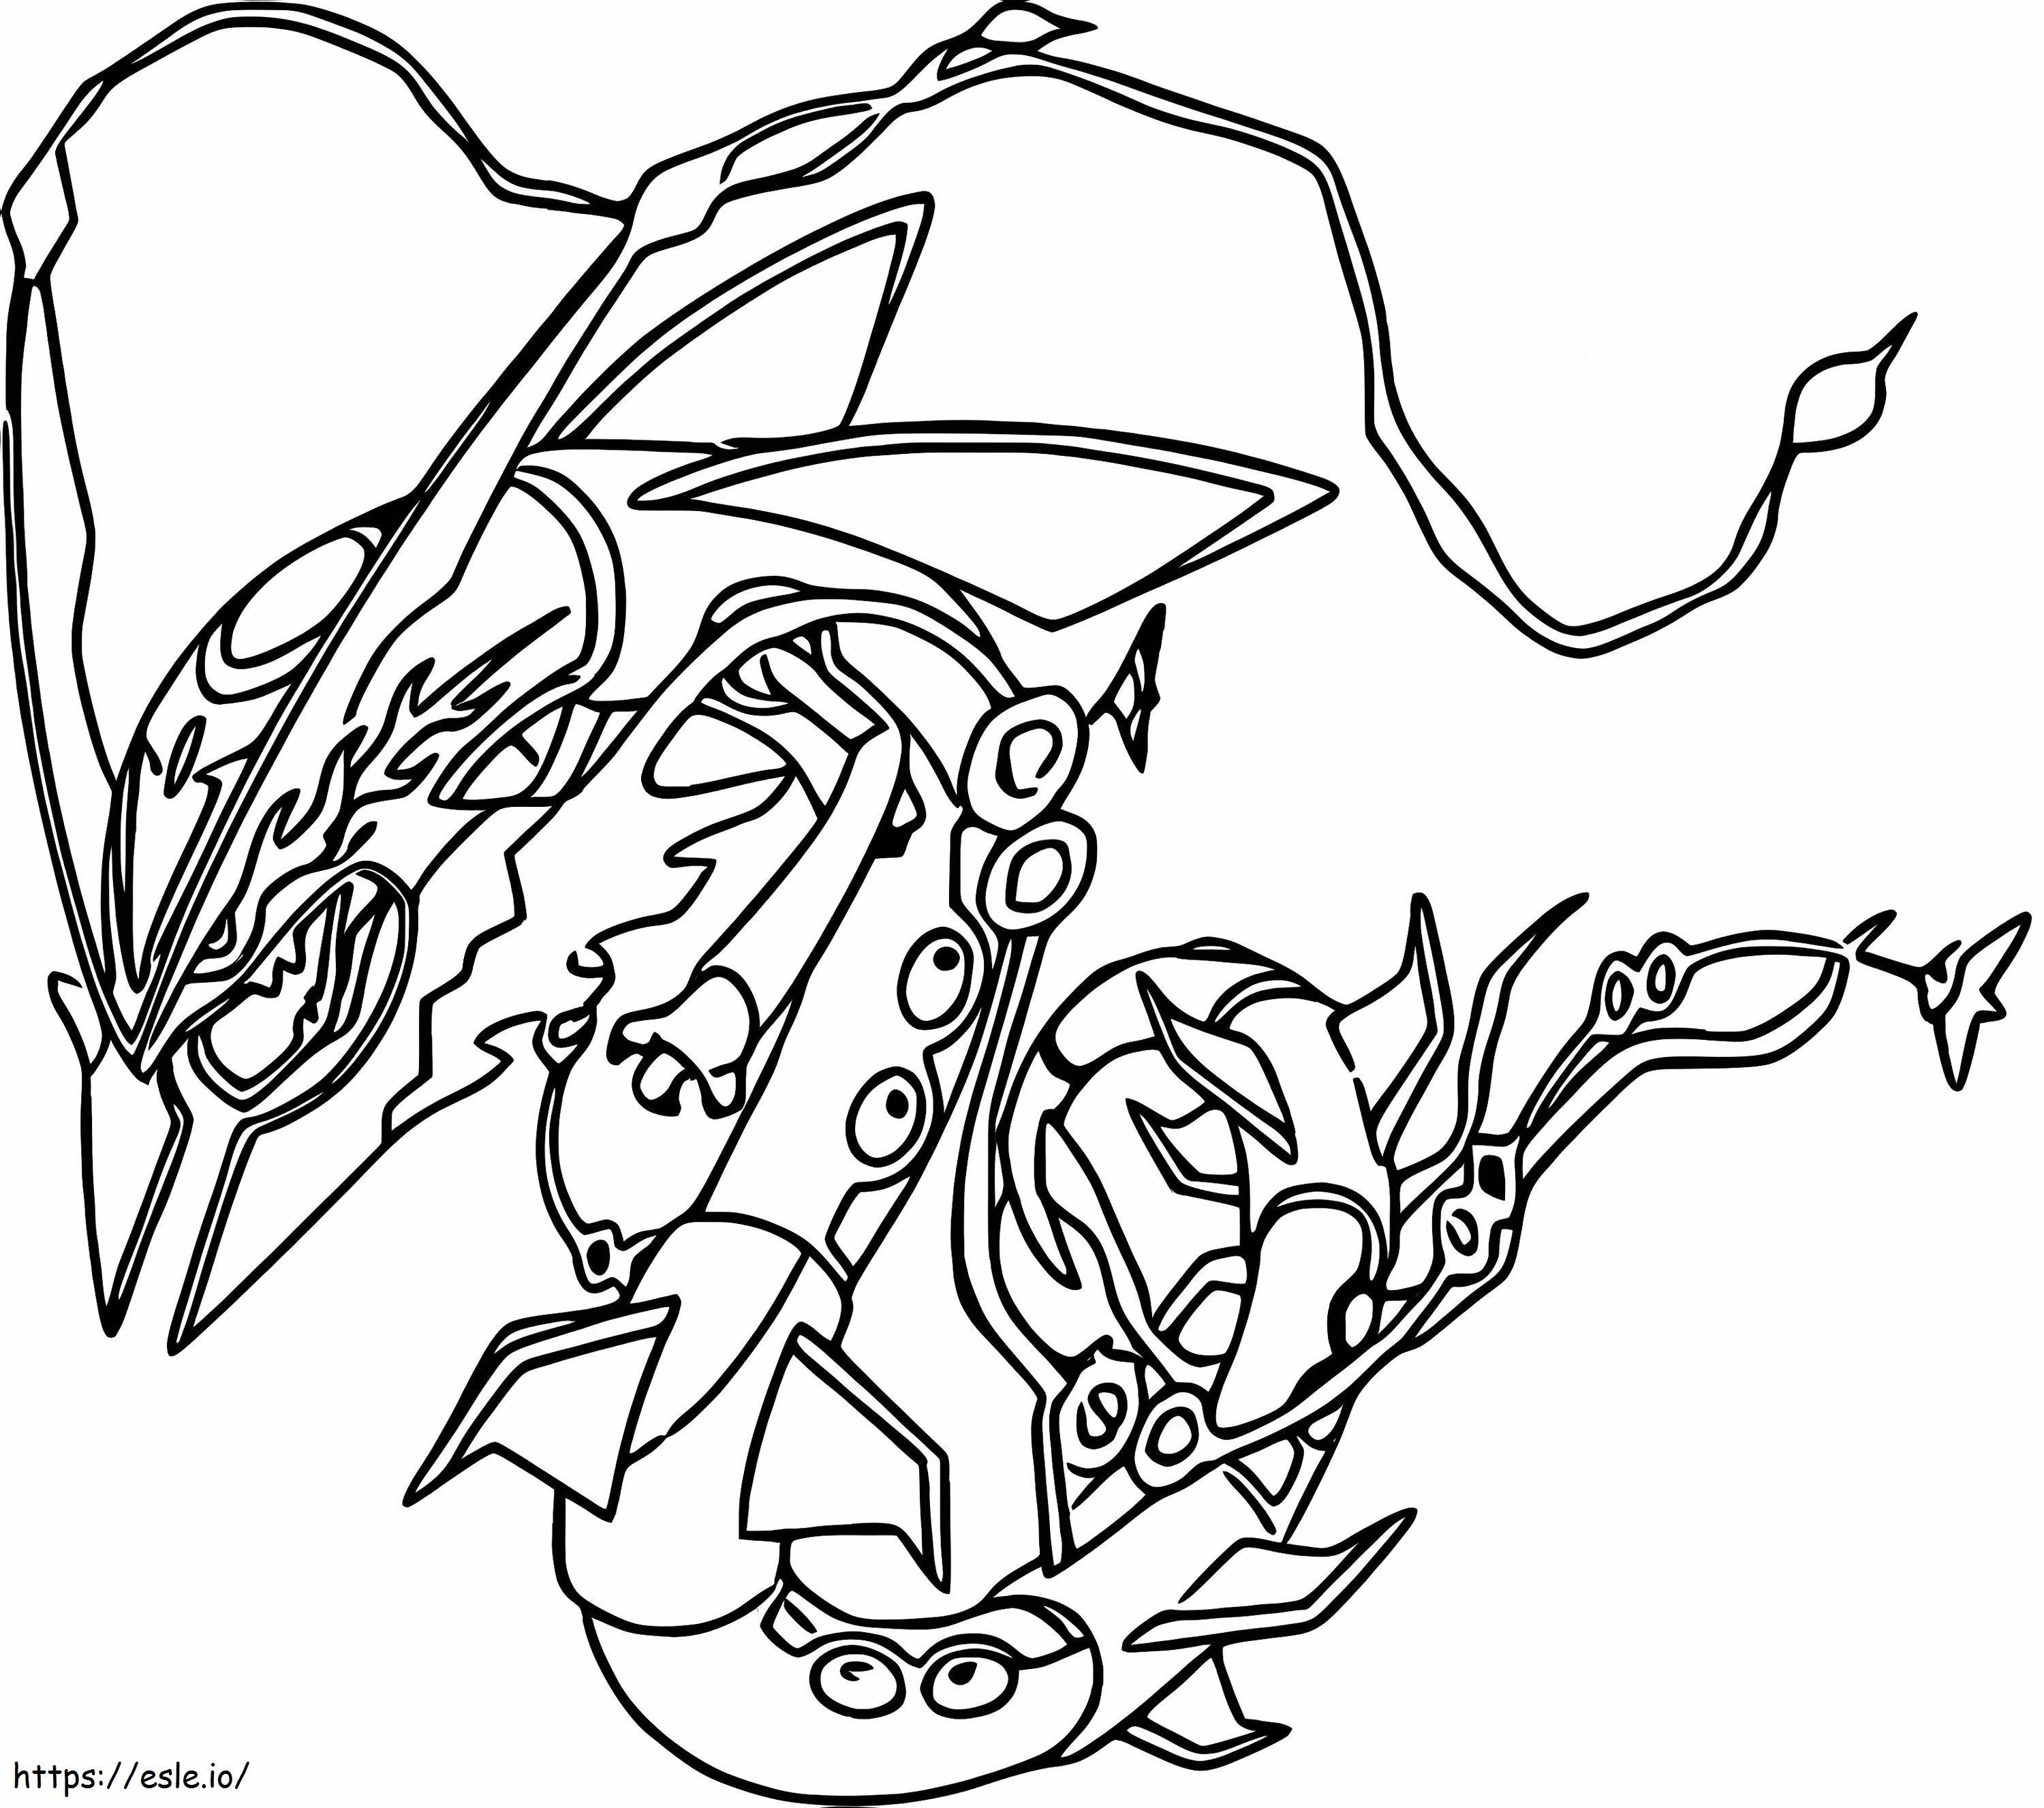 Coloriage Rayquaza dans Pokémon Légendaire à imprimer dessin